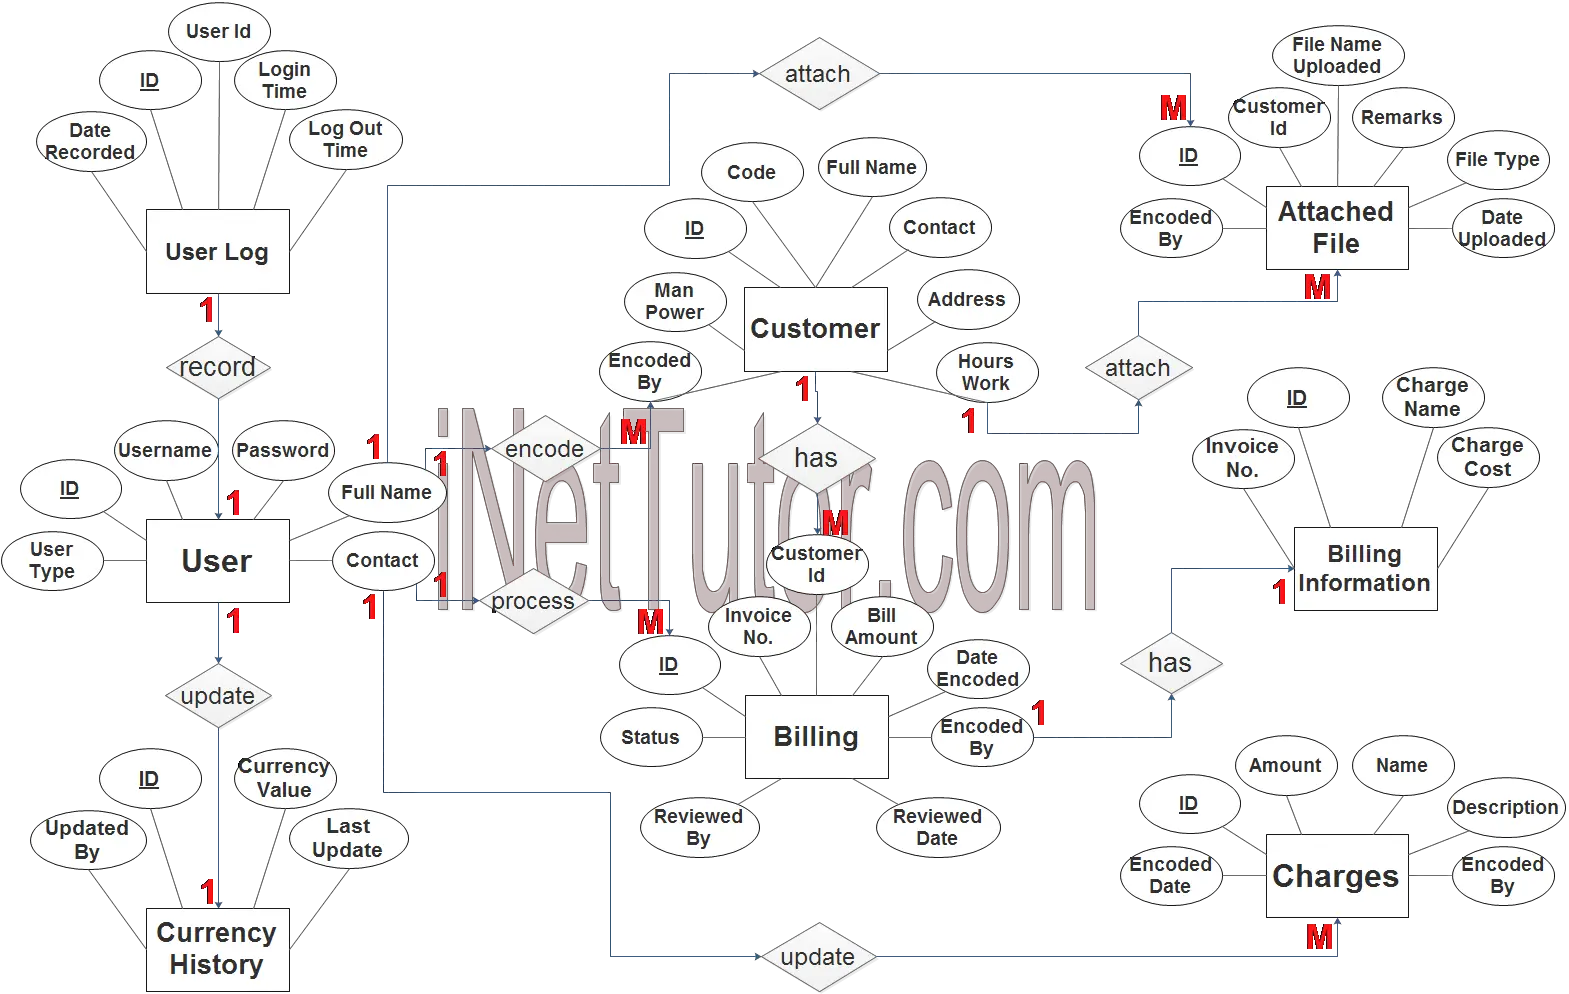 Billing Management System ER Diagram - Step 3 Complete ERD